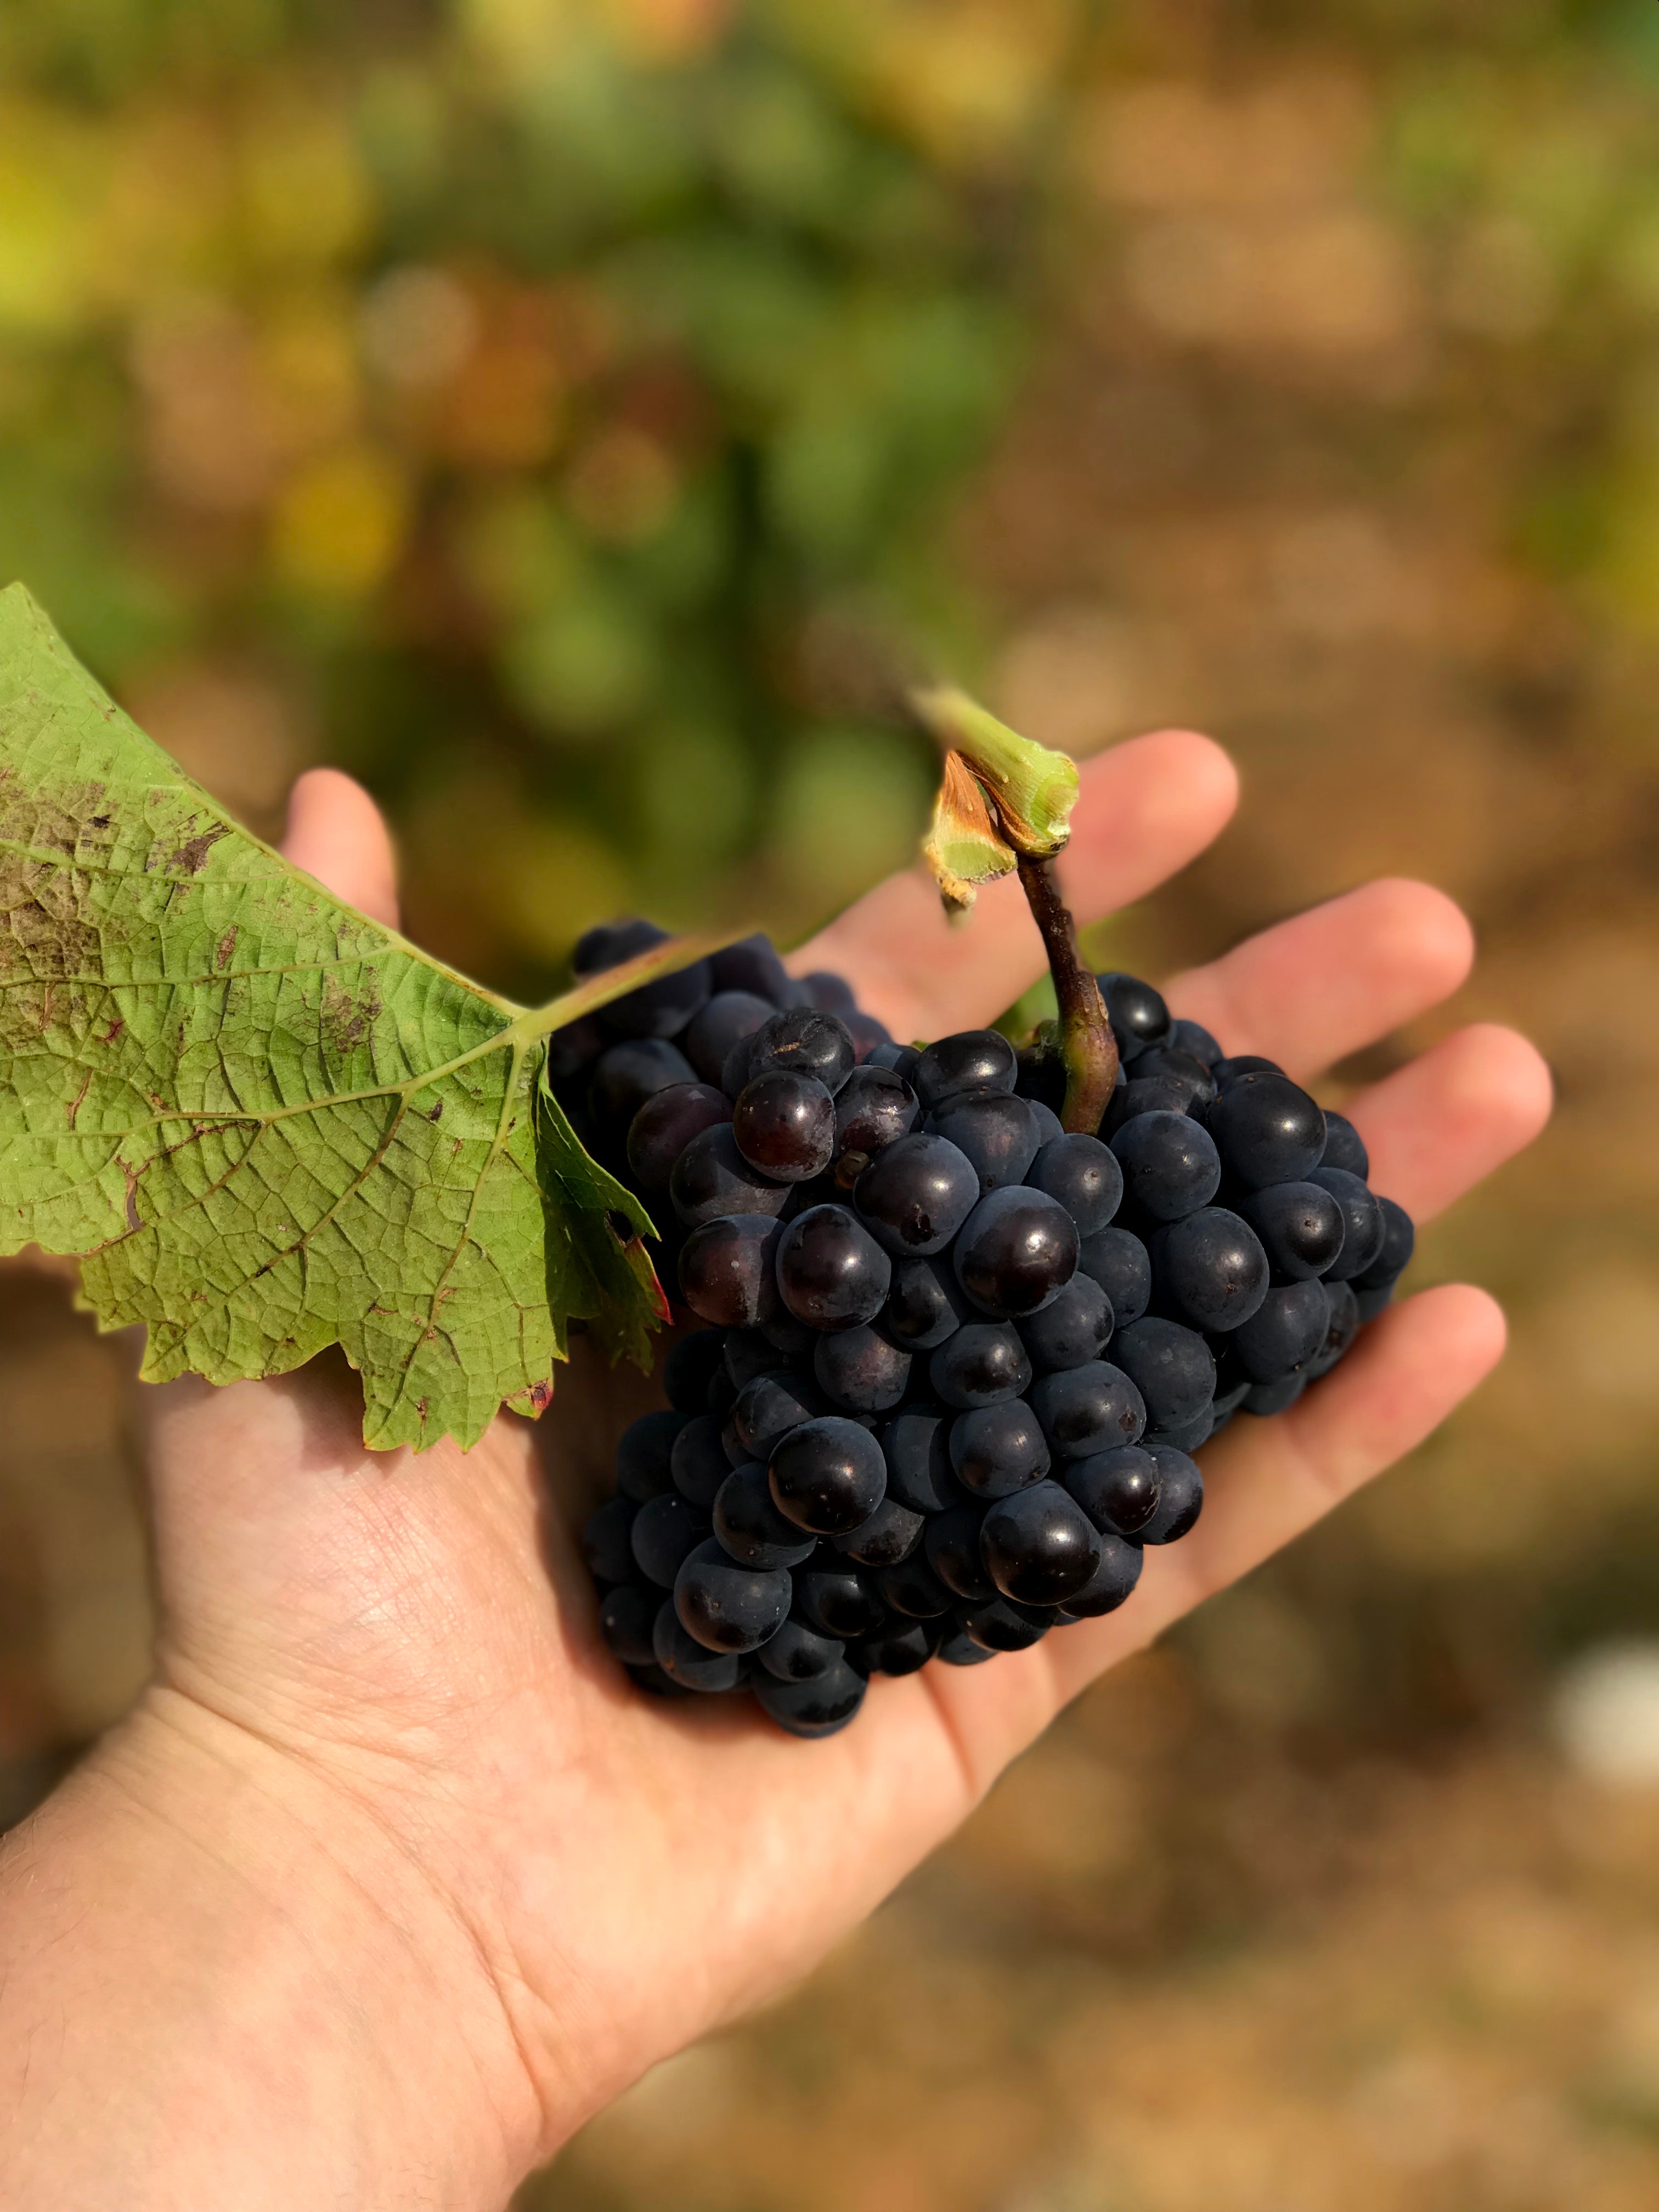 Agrícola : 3 buenas prácticas de postcosecha en uva vinífera